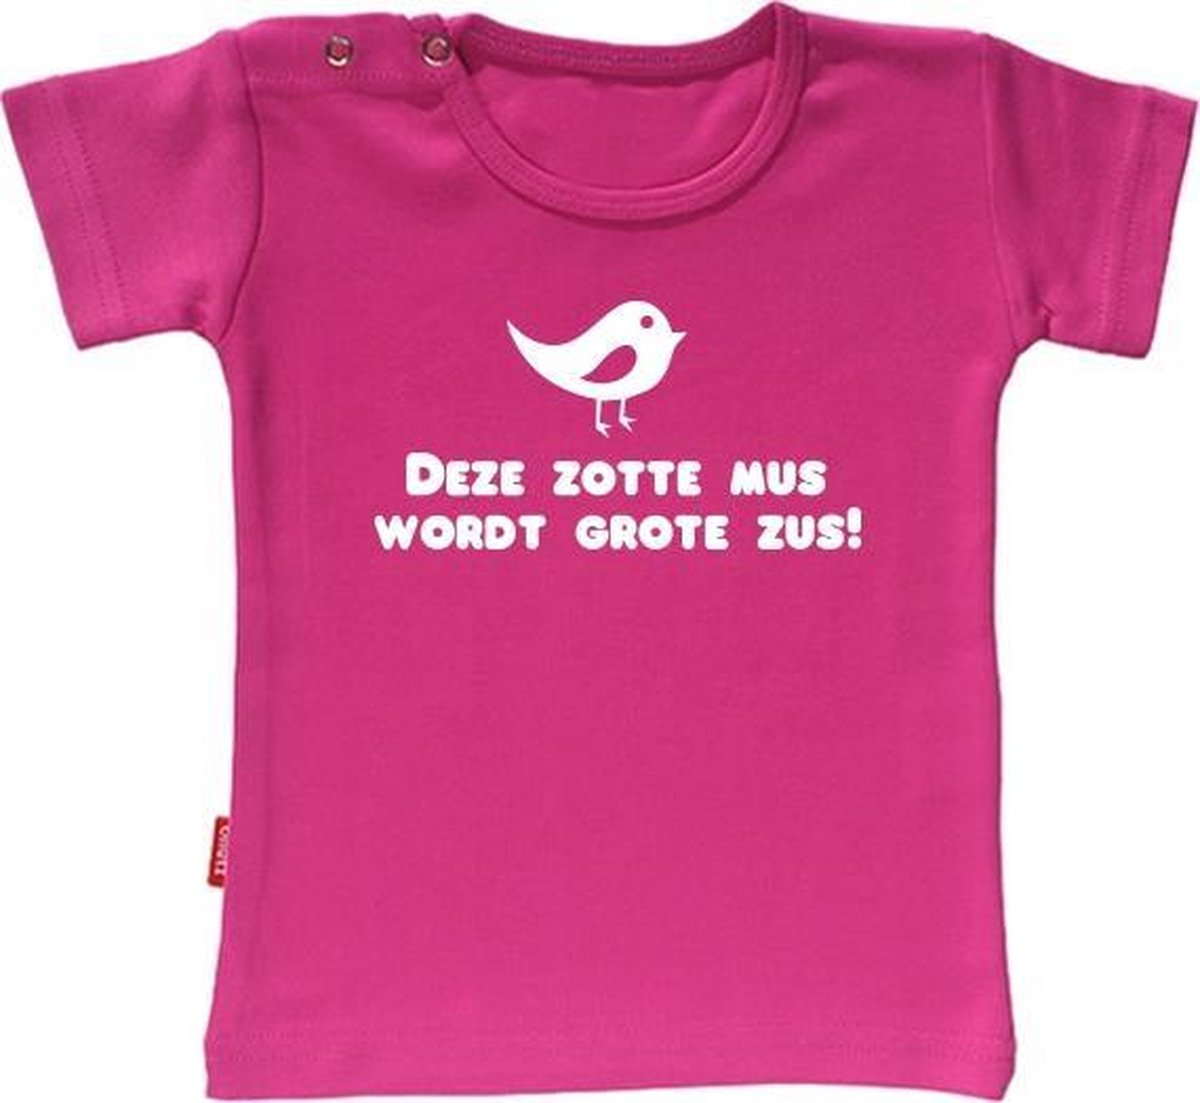 Babygoodies T-shirt Ik Word Grote Zus - Deze zotte mus wordt grote zus (Fuchsia 1-2j)